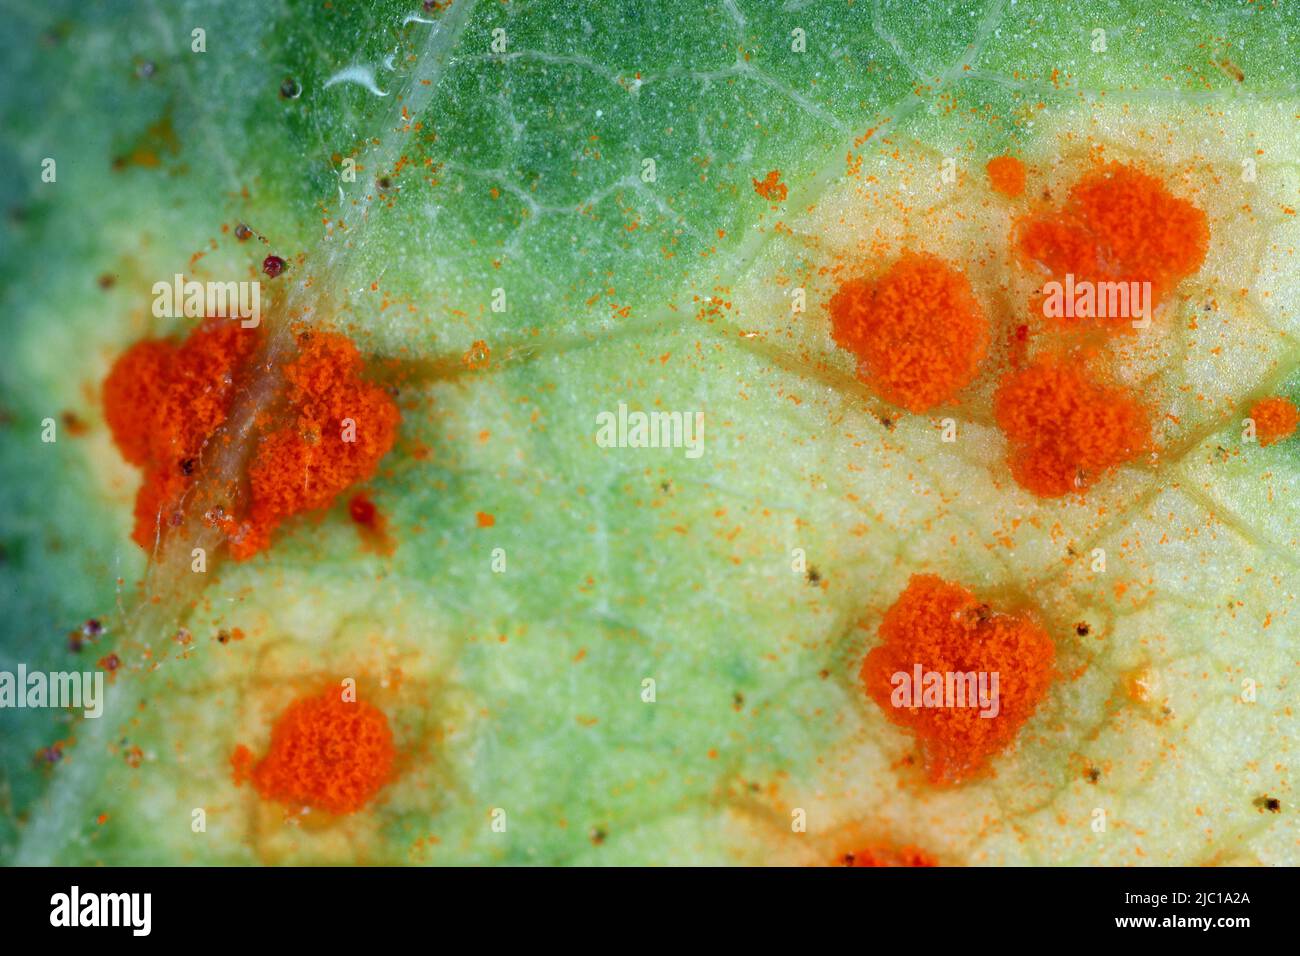 Rose rust, Phragmidium mucronatum, tuberculatum bulbosum. Pustules (urediospores, teliospores) formed on the lower leaf surface of an ornamental rose. Stock Photo